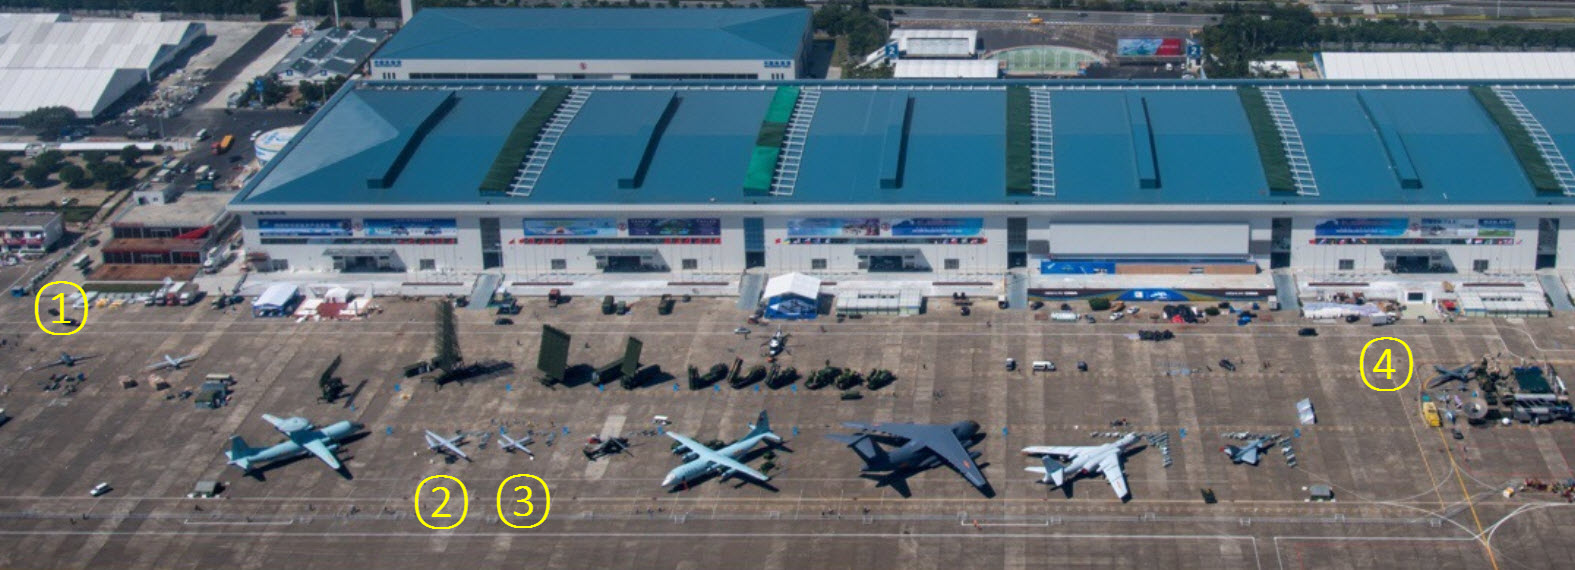 Une vue aérienne du site de l'Airshow China 2016 (Source : 罗韬1515)